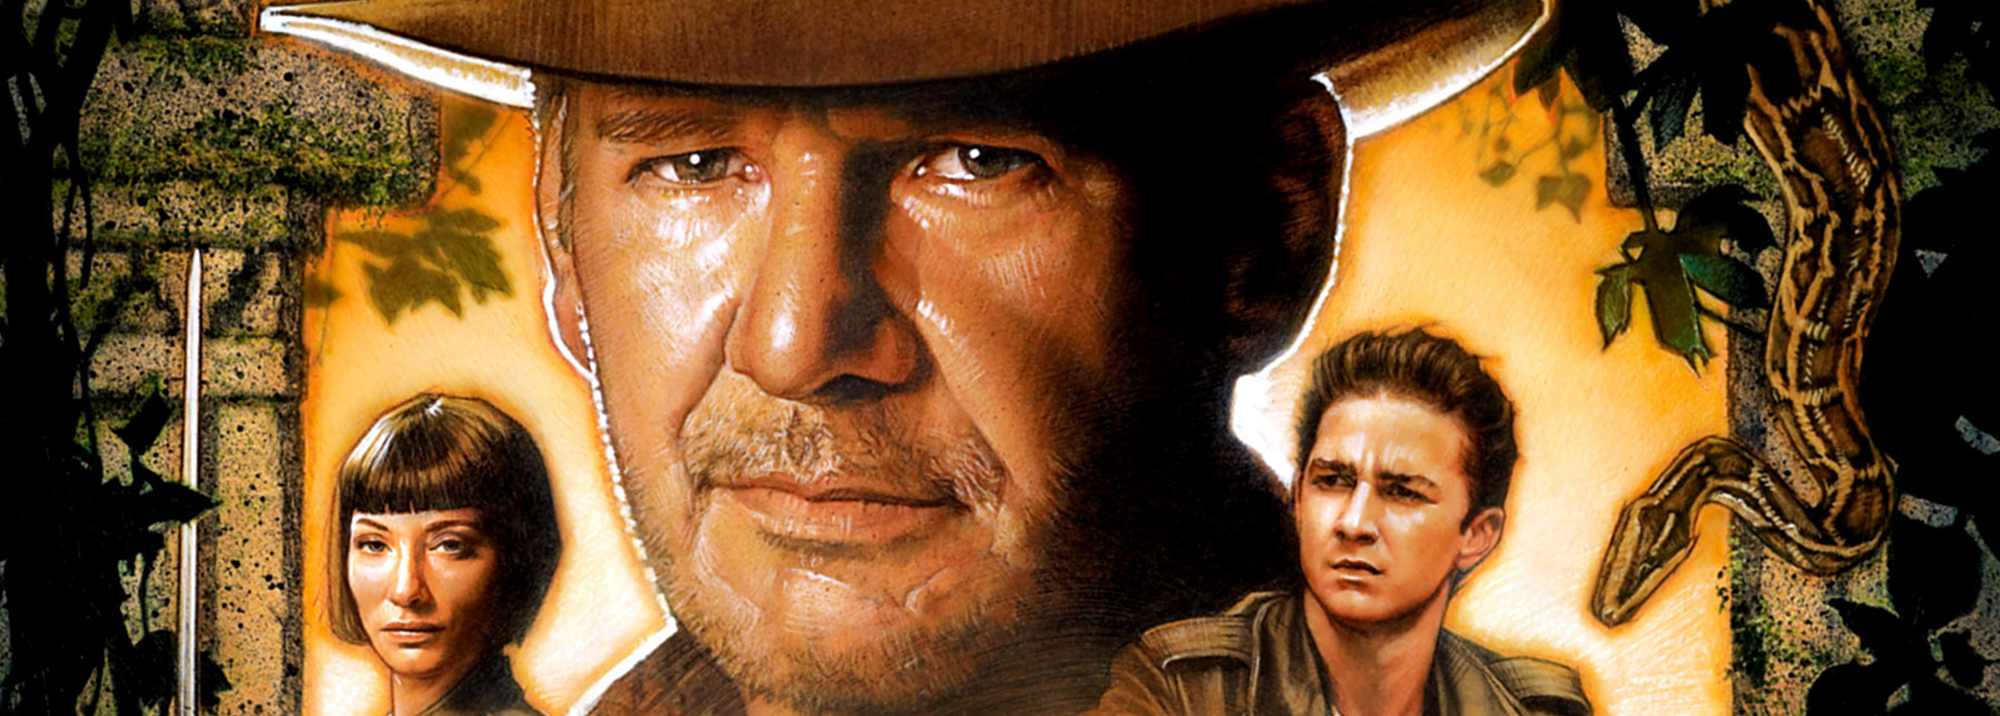 Indiana Jones terug in 2019 met Harrison Ford en Steven Spielberg